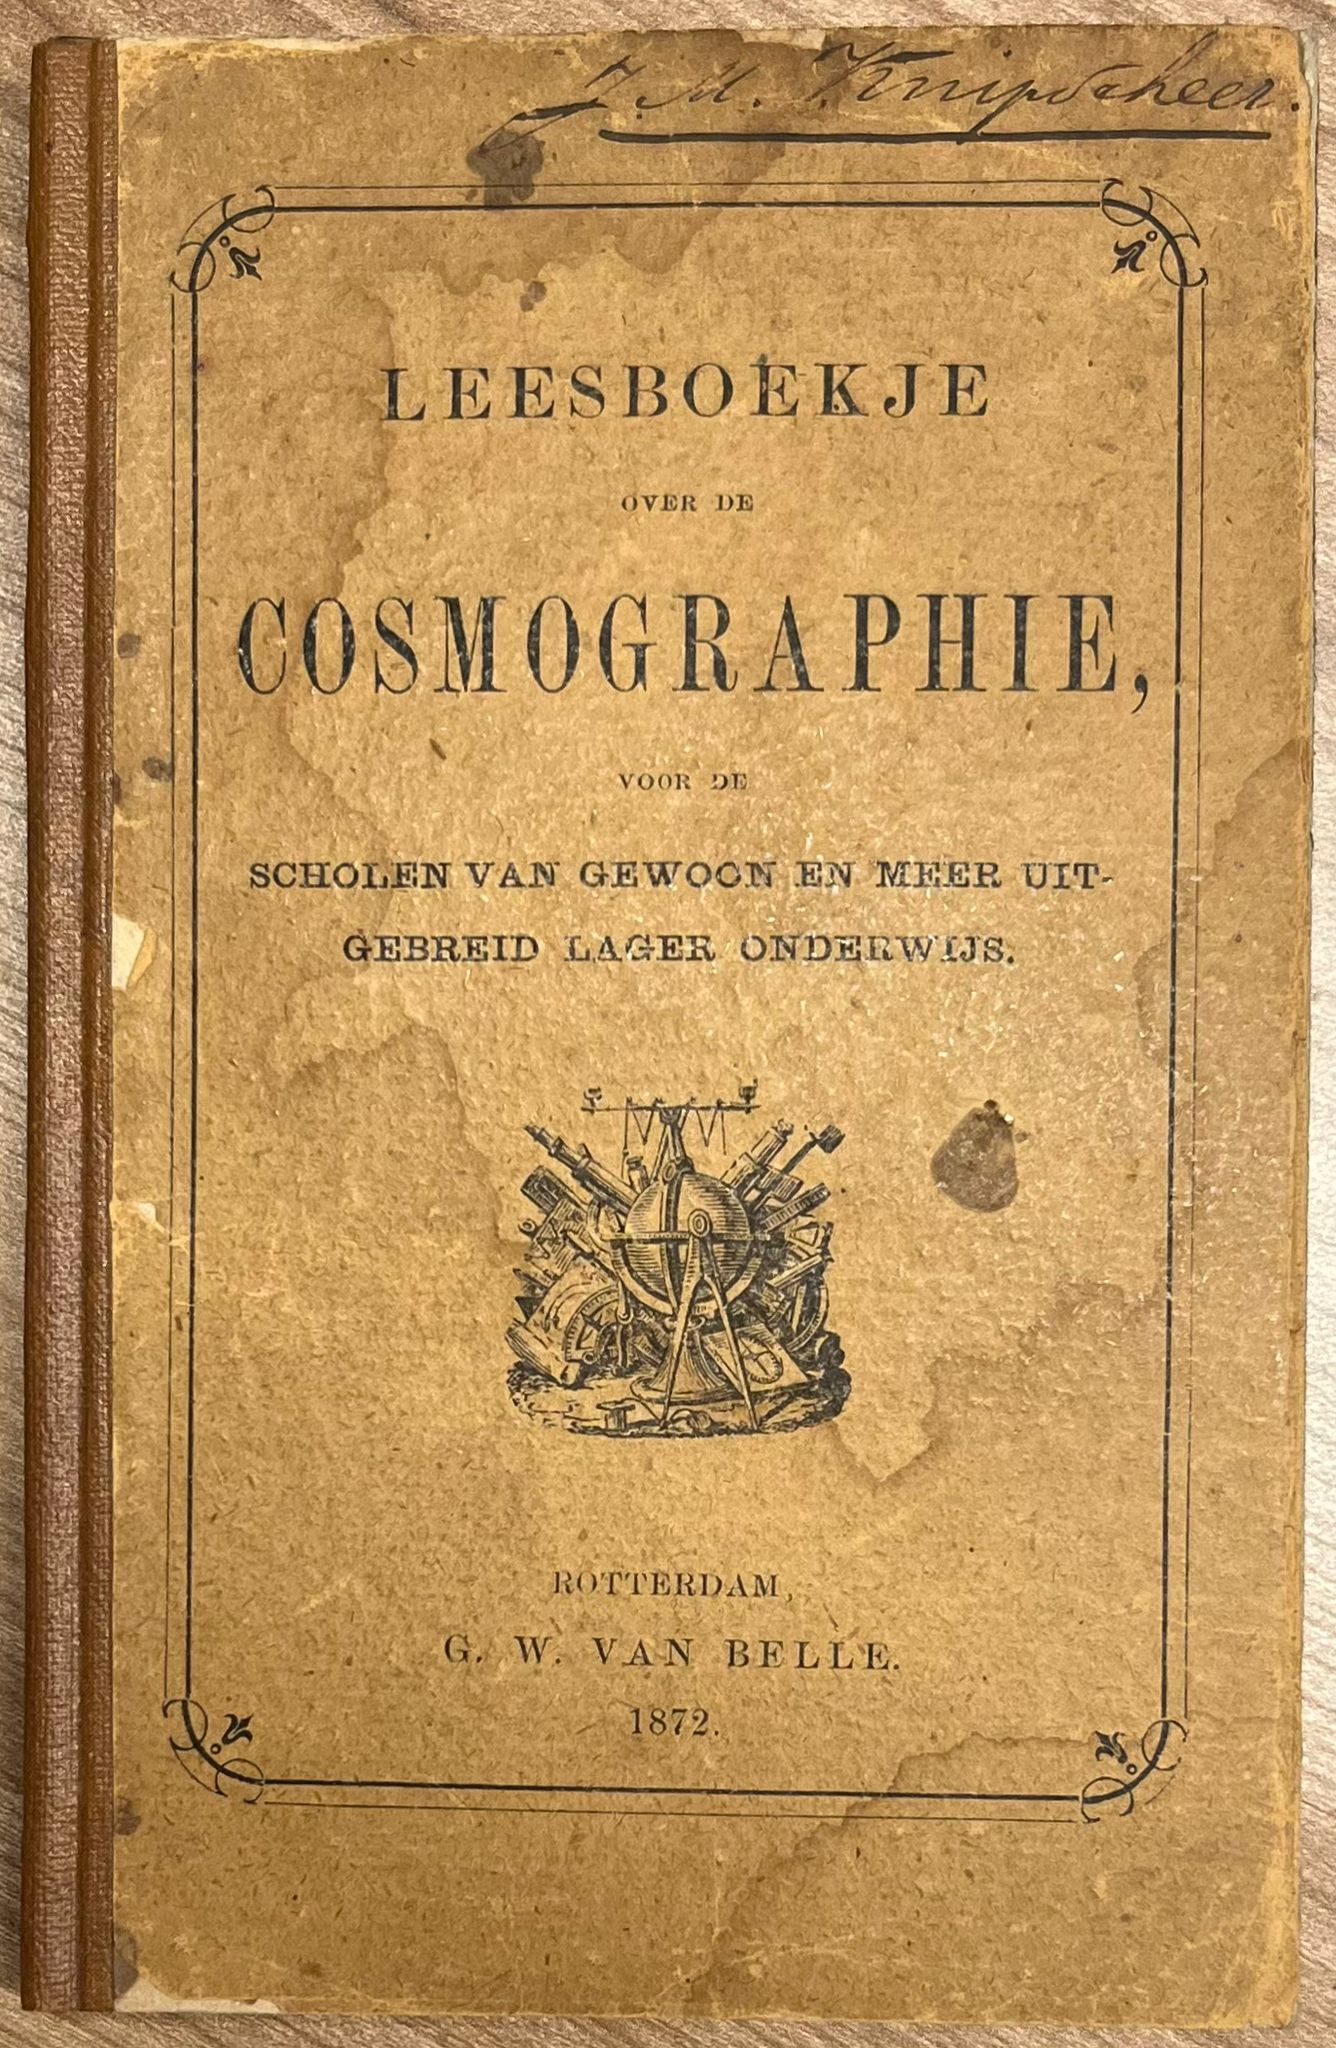  - School book, 1872, Education | Leesboekje over de Cosmographie, voor de scholen van gewoon en meer uitgebreid lager onderwijs. Rotterdam, G. W. van Belle, 1872, 92 pp.